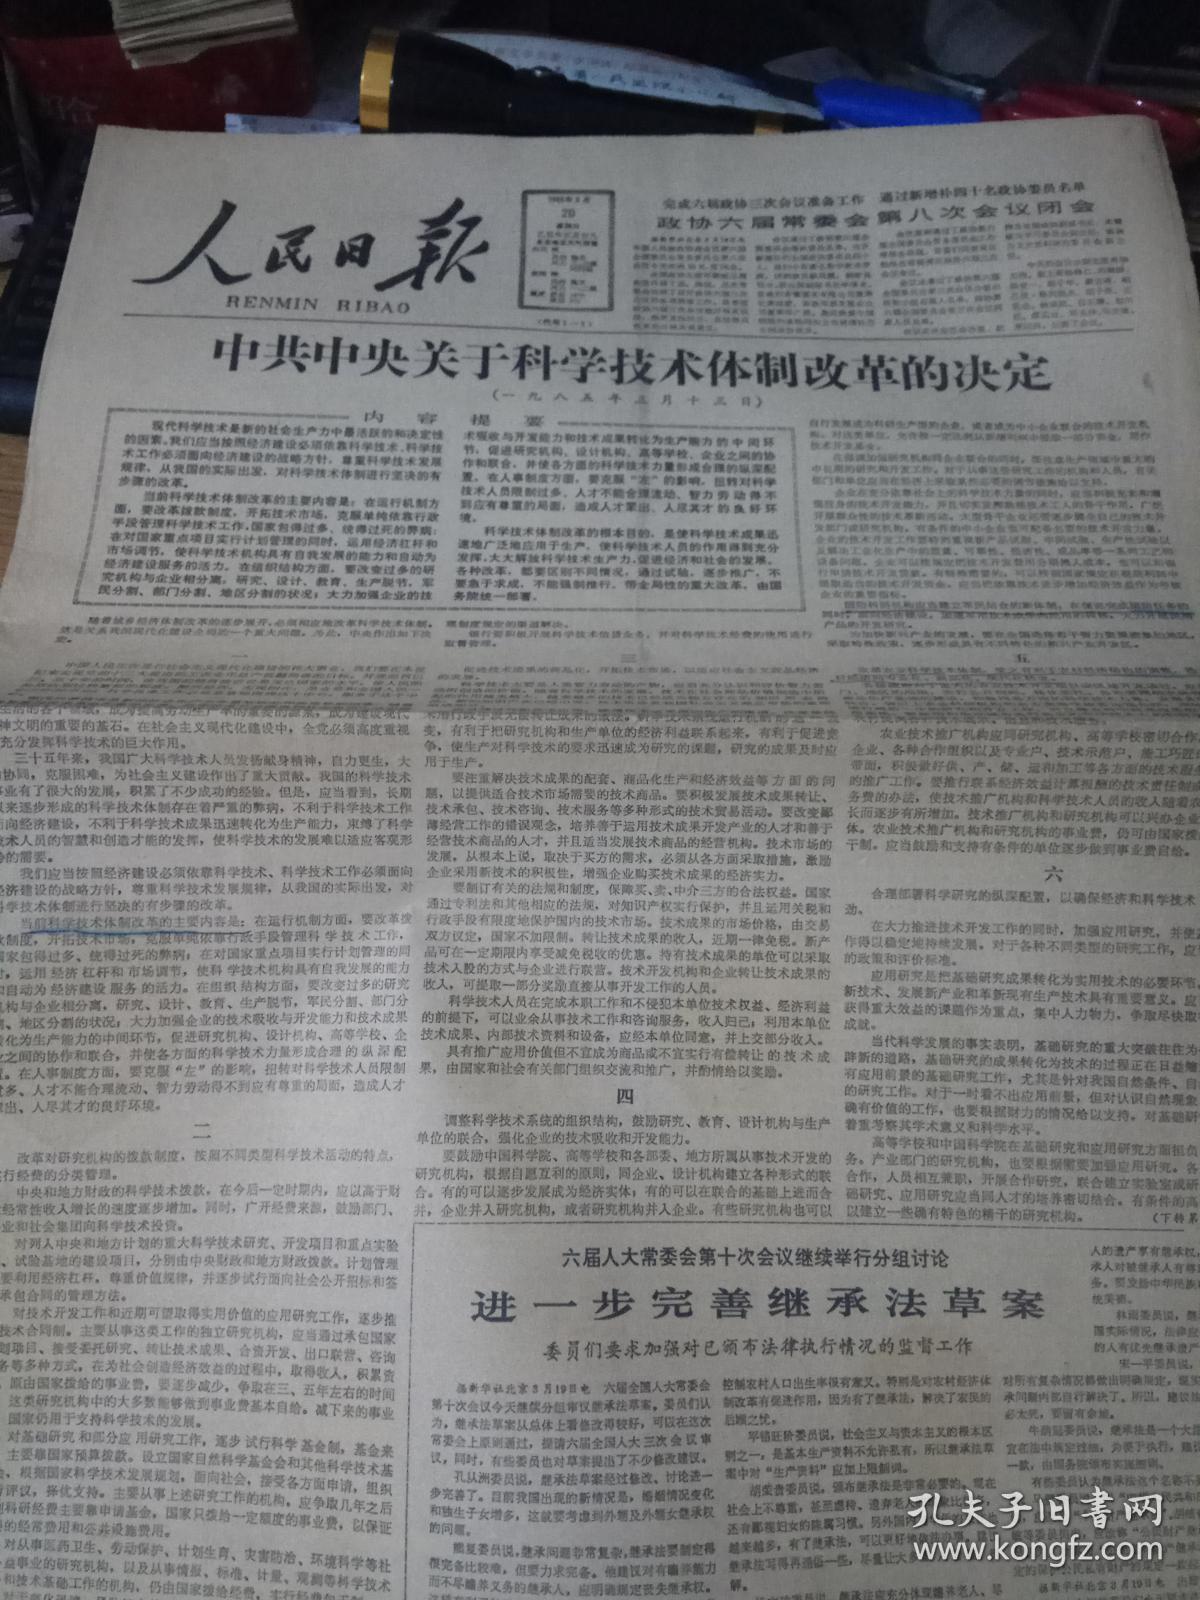 《人民日报》1985年3月20日刊有中共中央关于